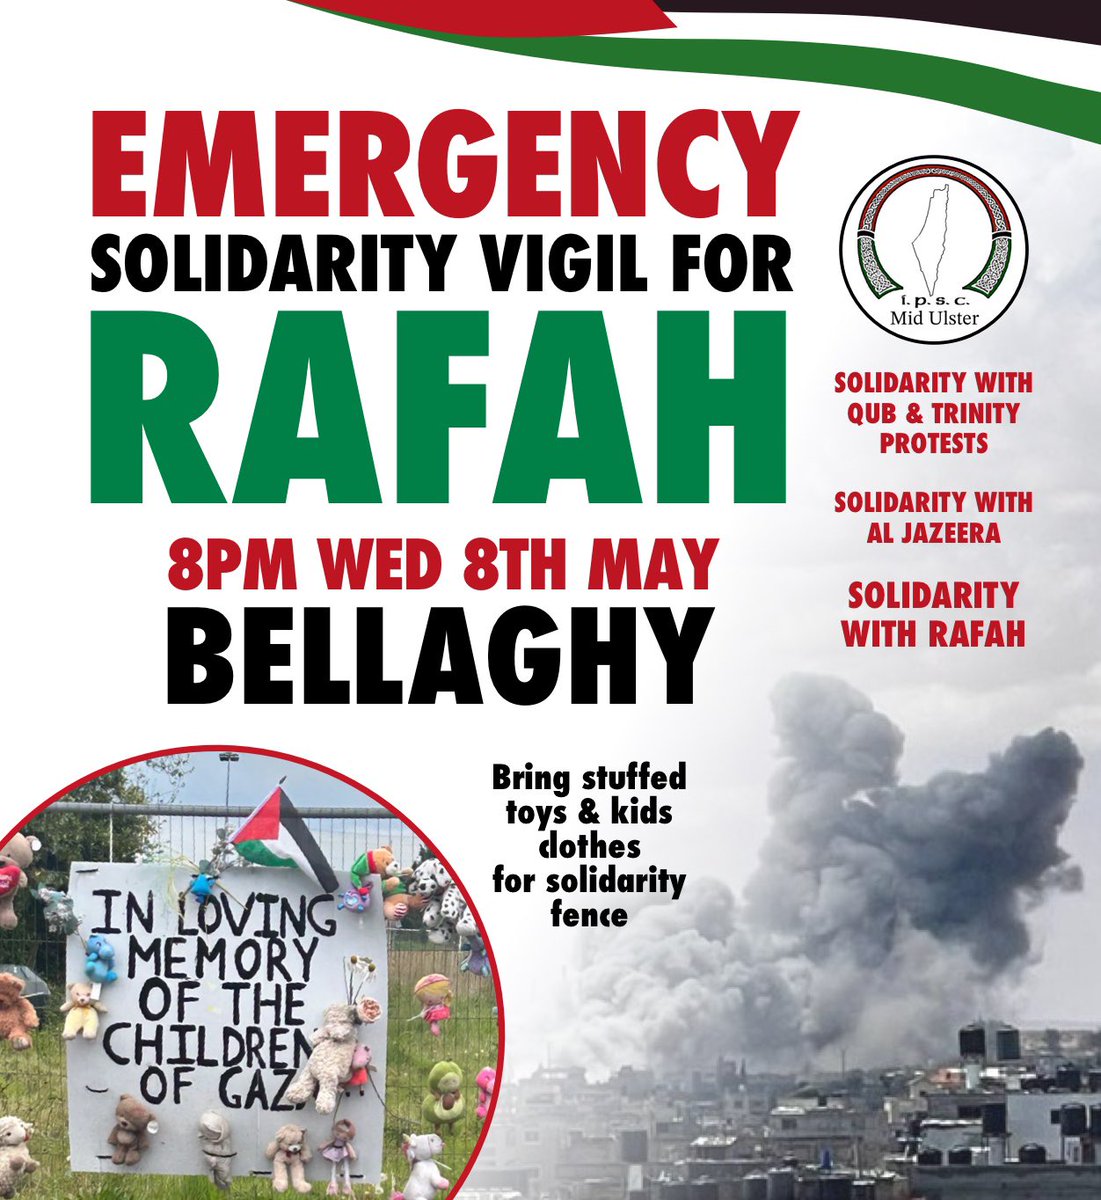 🚨 EMERGENCY MID ULSTER RALLY FOR RAFAH TOMORROW AT 8PM 🚨🇵🇸 Bellaghy, South Derry 🇵🇸 @GaelsAgainstGen @JoeBrolly1993 @BellaghyGAC @JJHurson @WattyGrahamsGAA